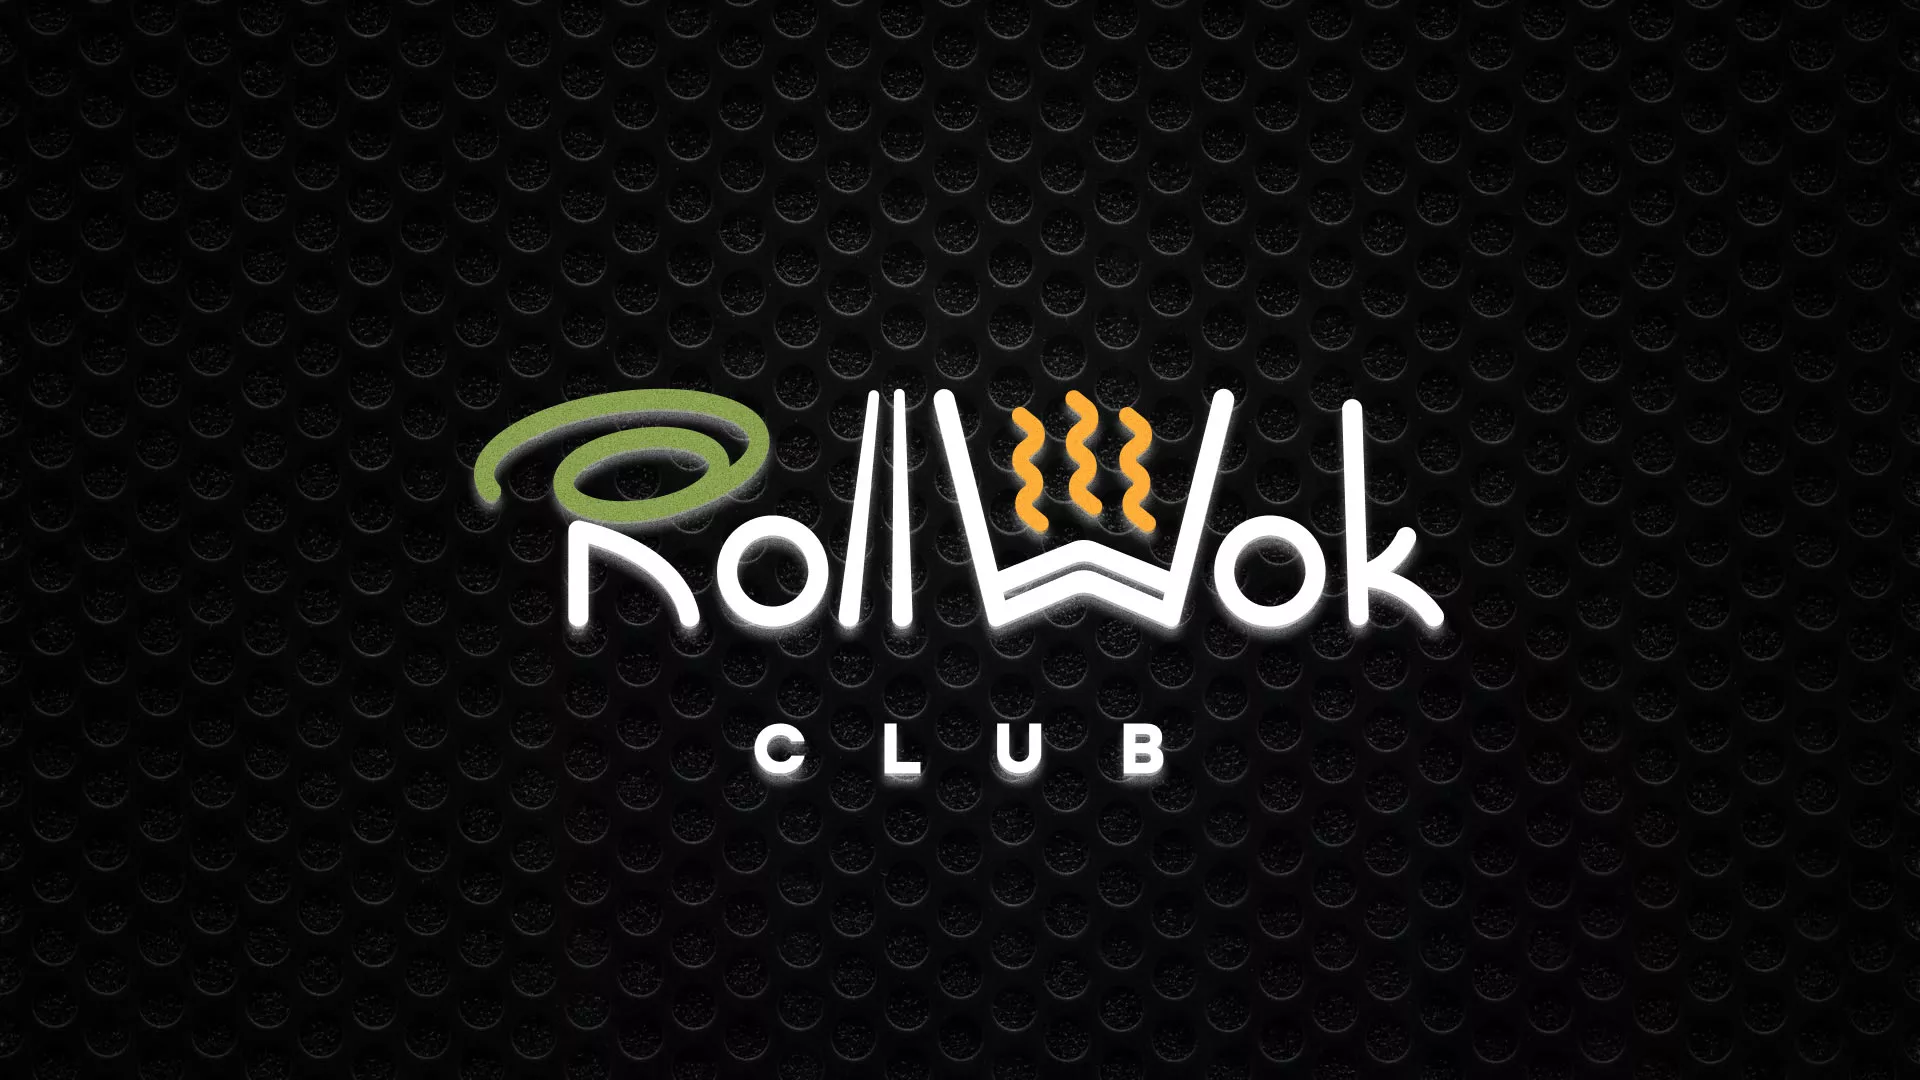 Брендирование торговых точек суши-бара «Roll Wok Club» в Якутске